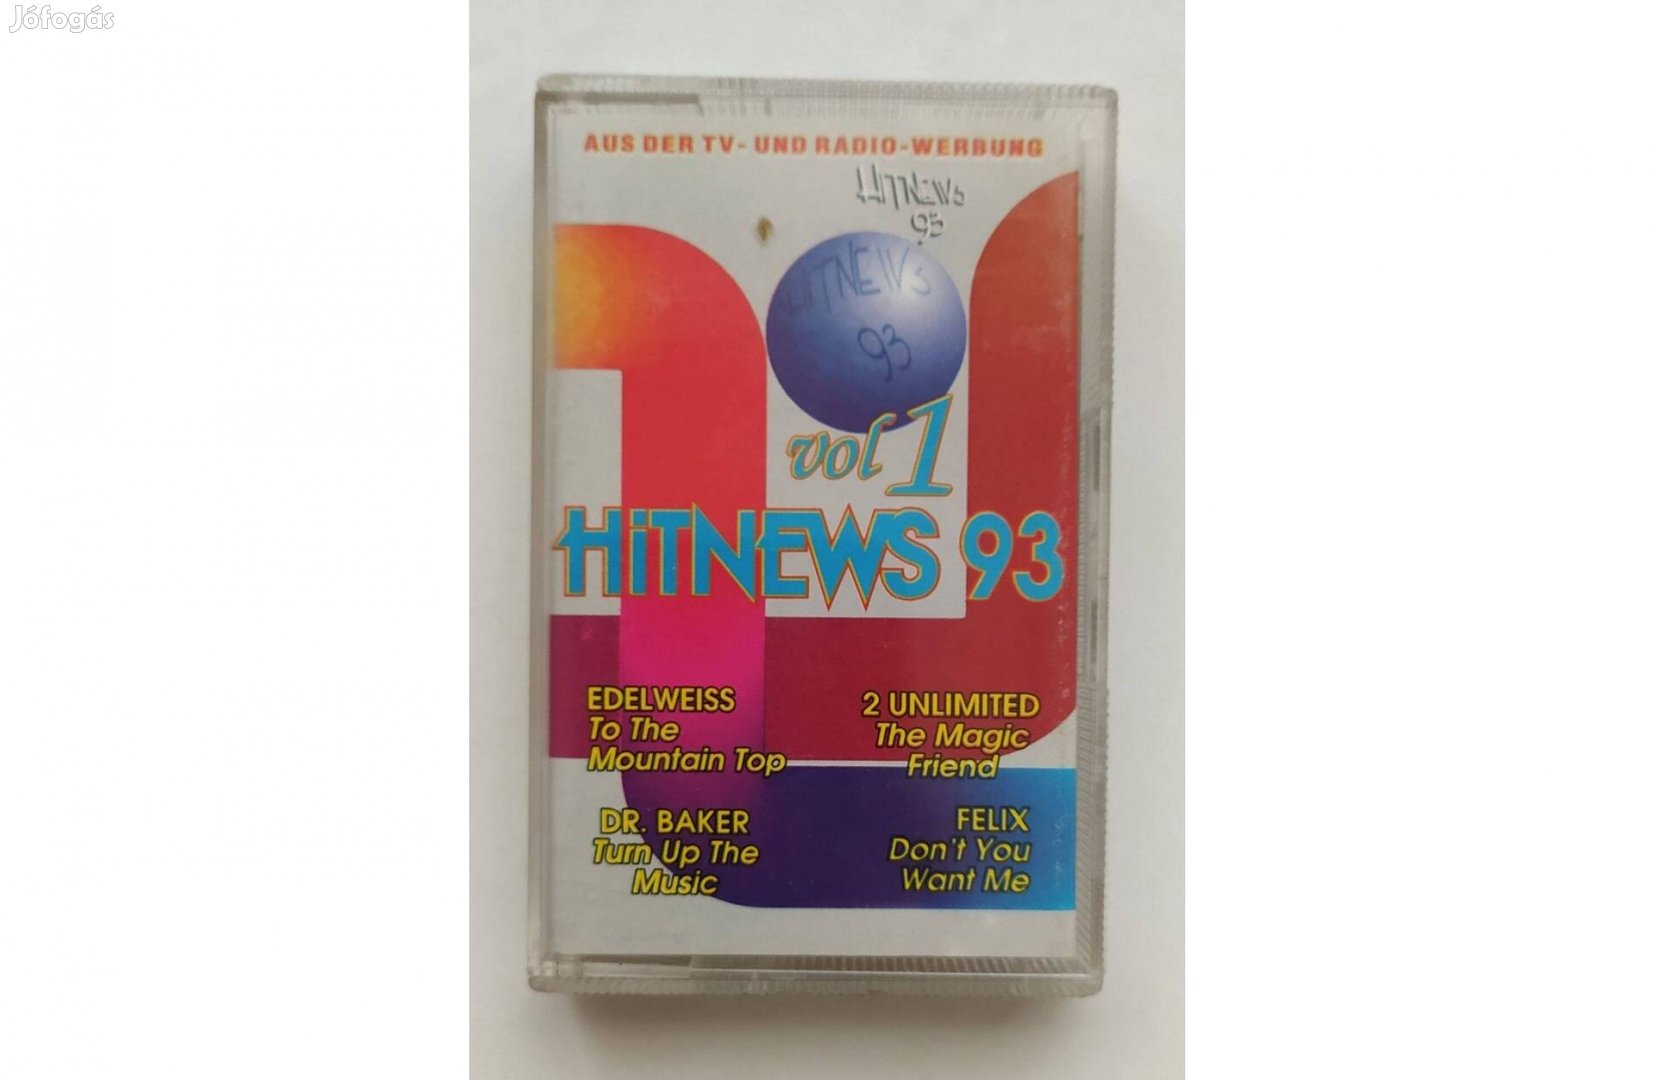 Hitnews 93 vol 1, 3, és Hit mix 93 vol 2 kazetta magnó, retro, pop